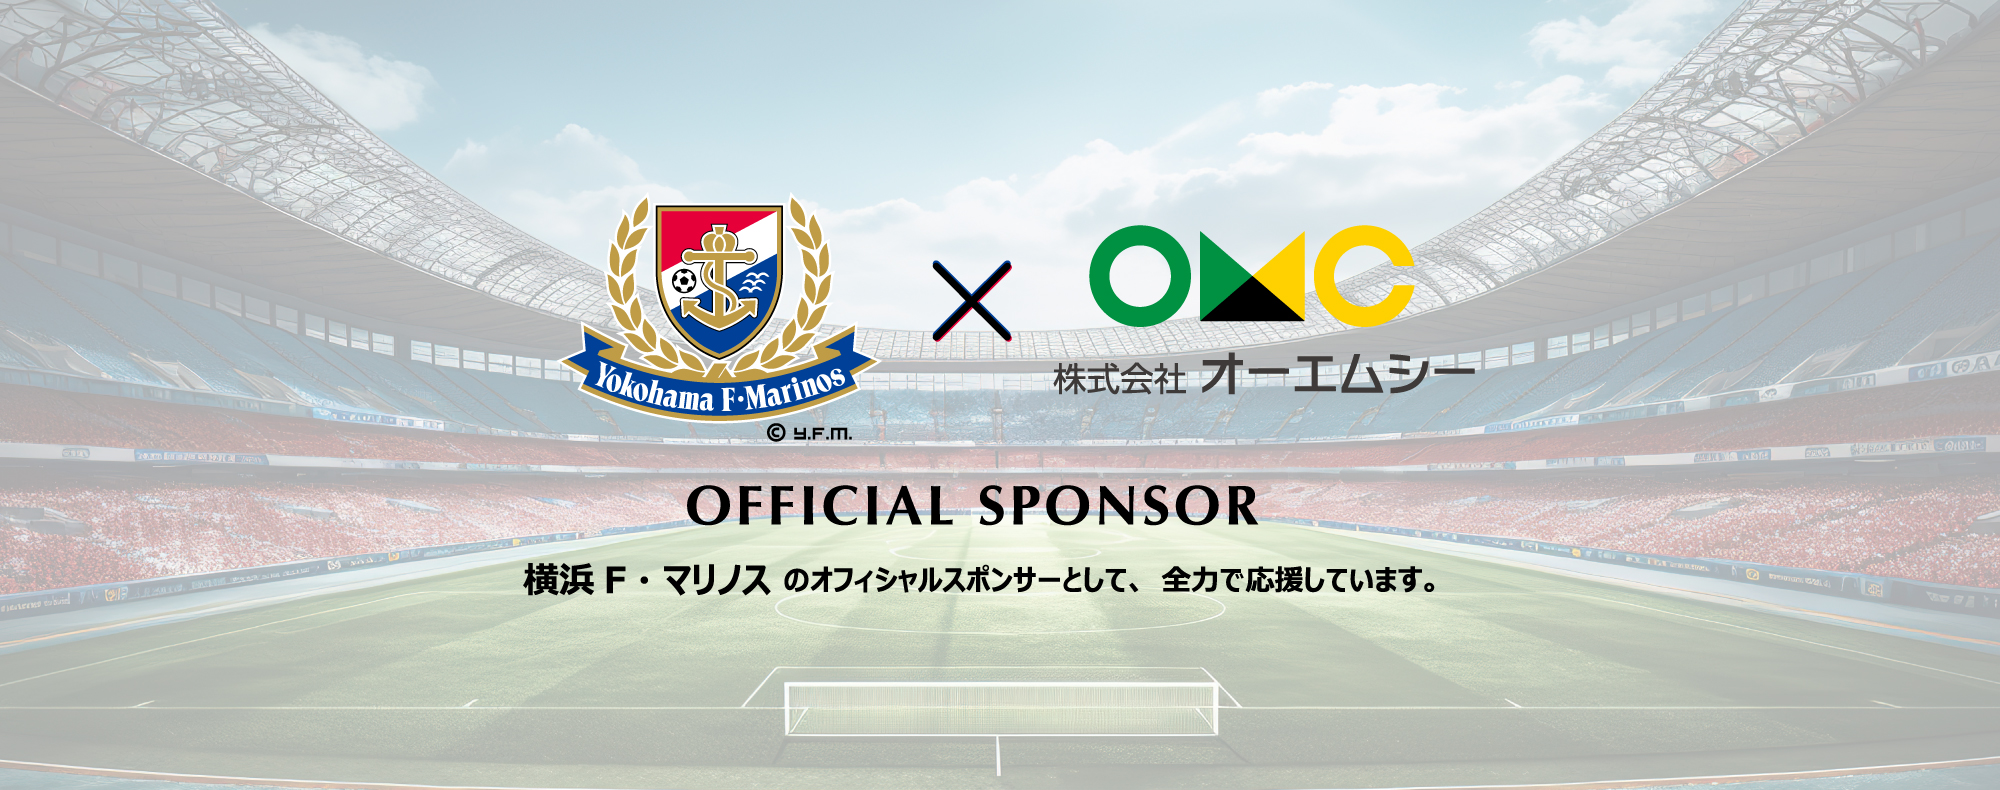 株式会社オーエムシーは横浜・F・マリノスのオフィシャルスポンサーとして全力で応援します